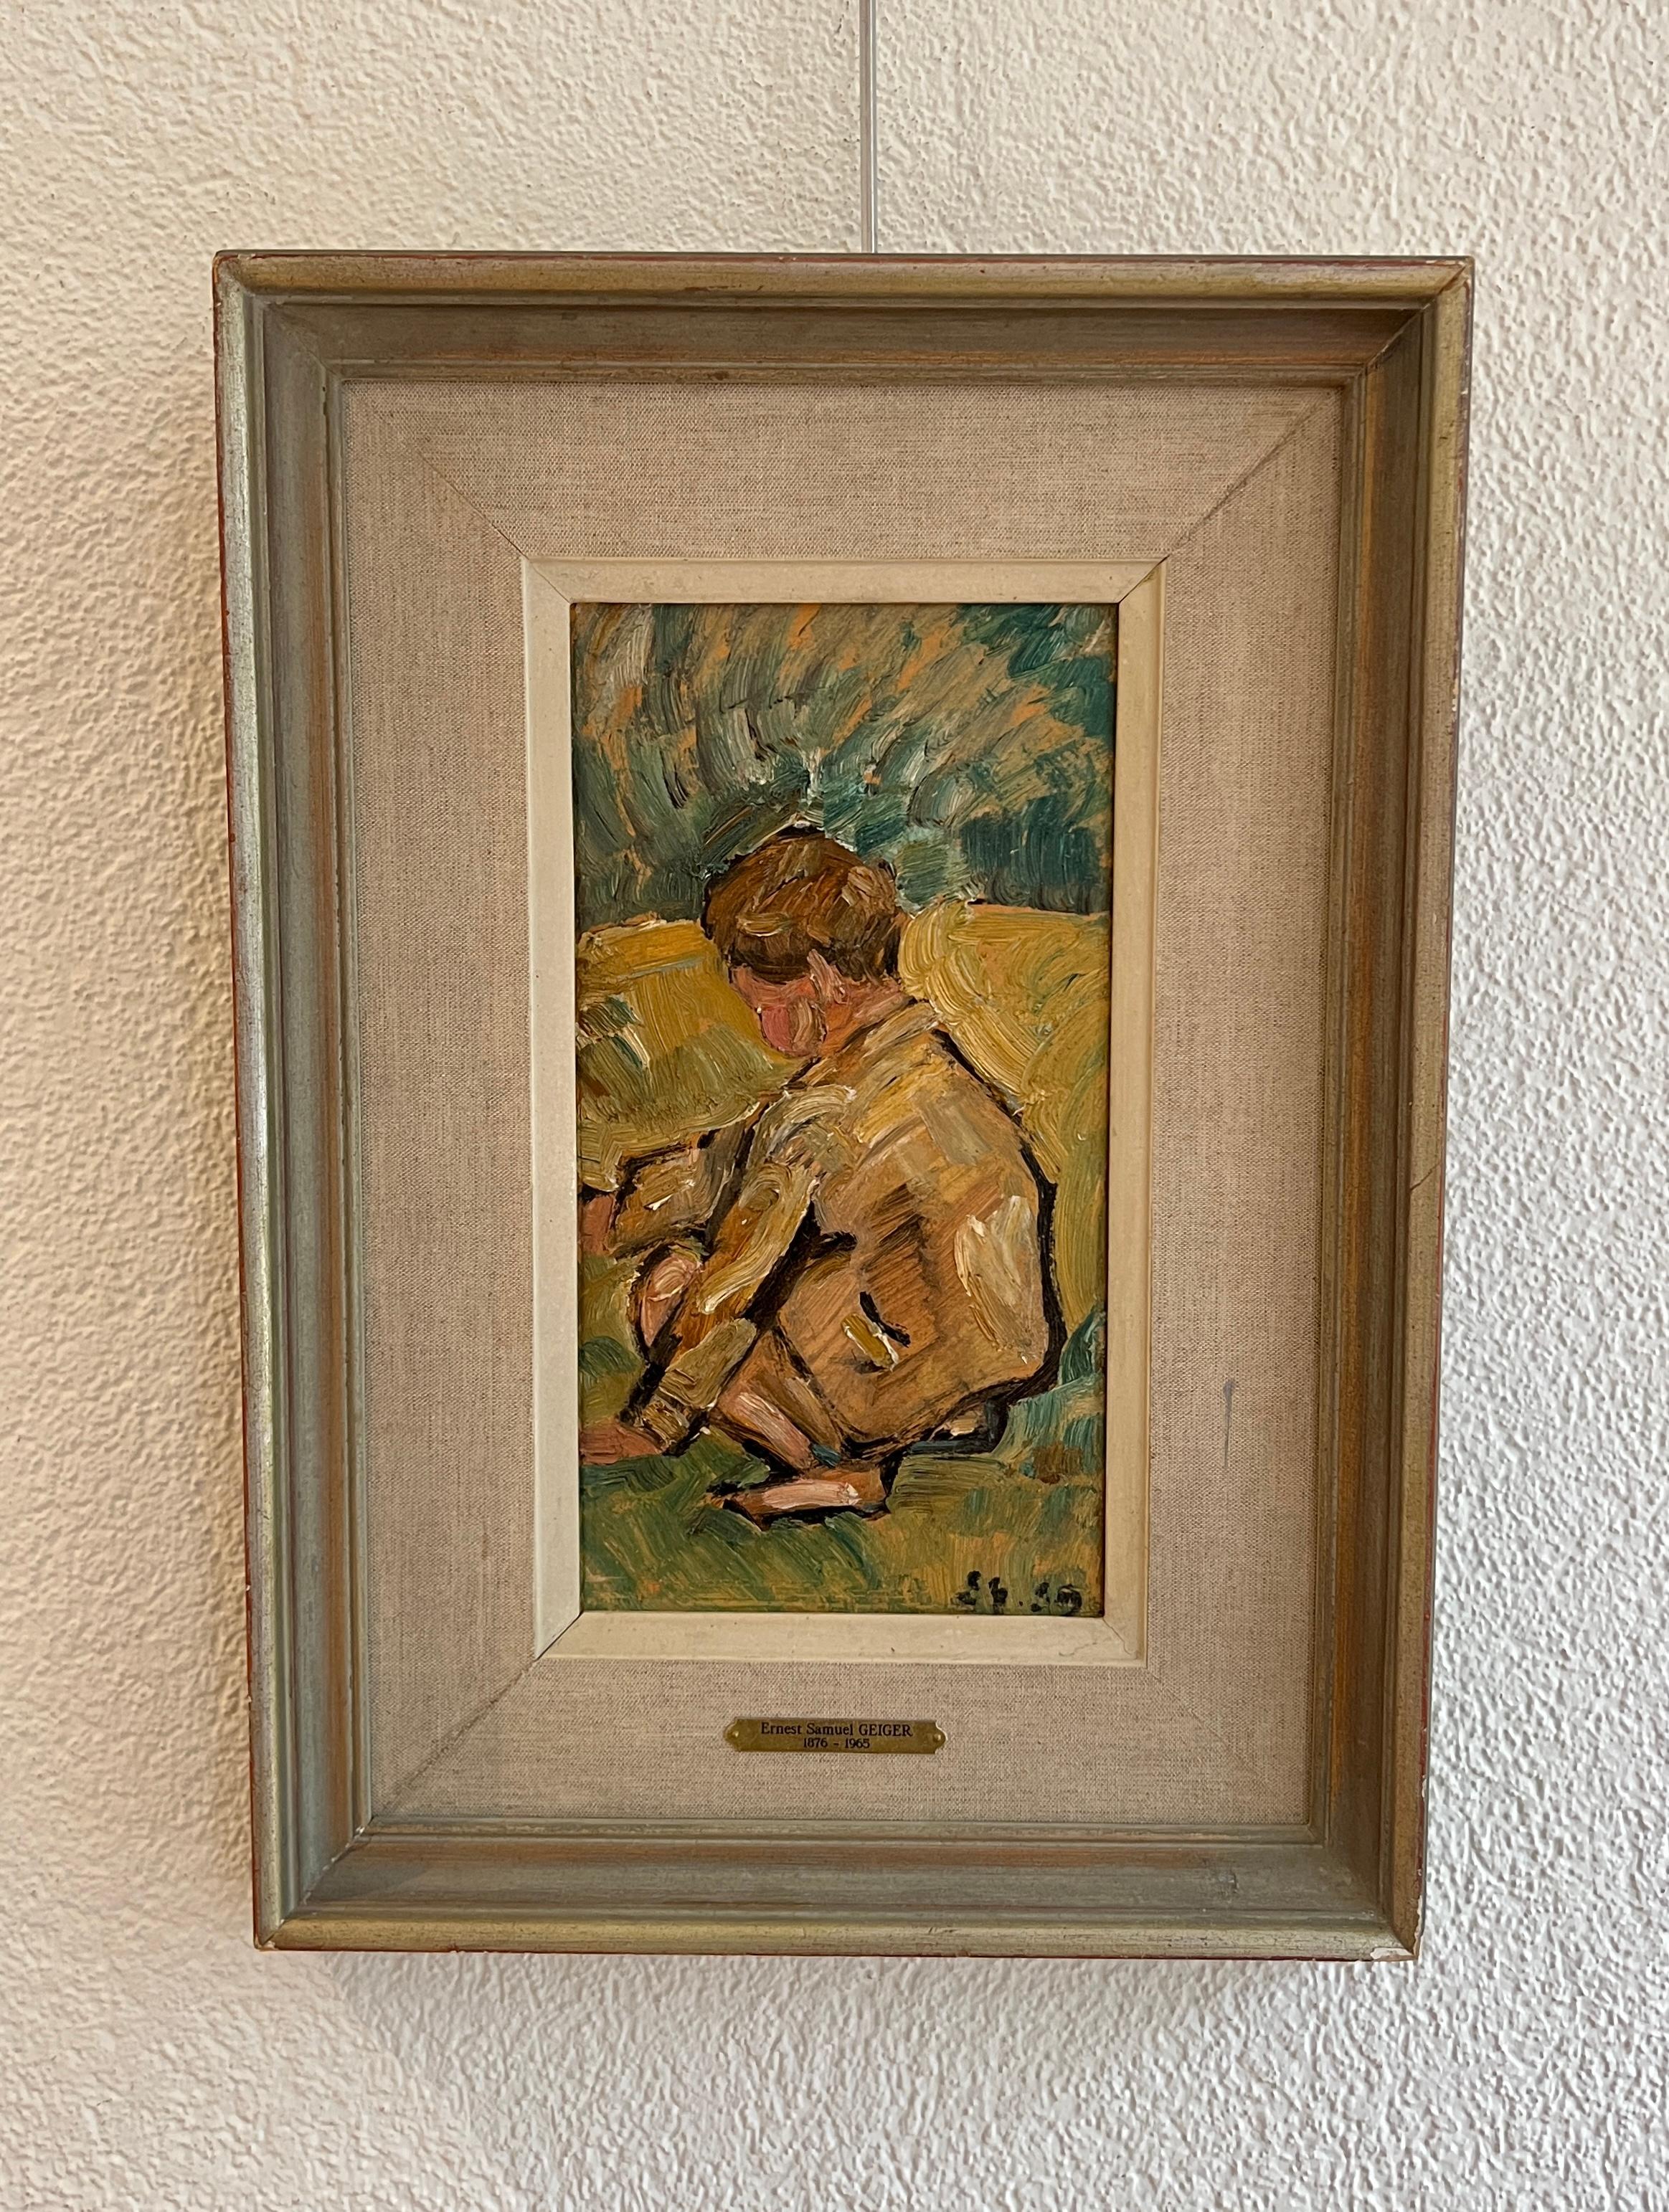 Das kleine Kind spielt – Painting von Ernest Samuel Geiger